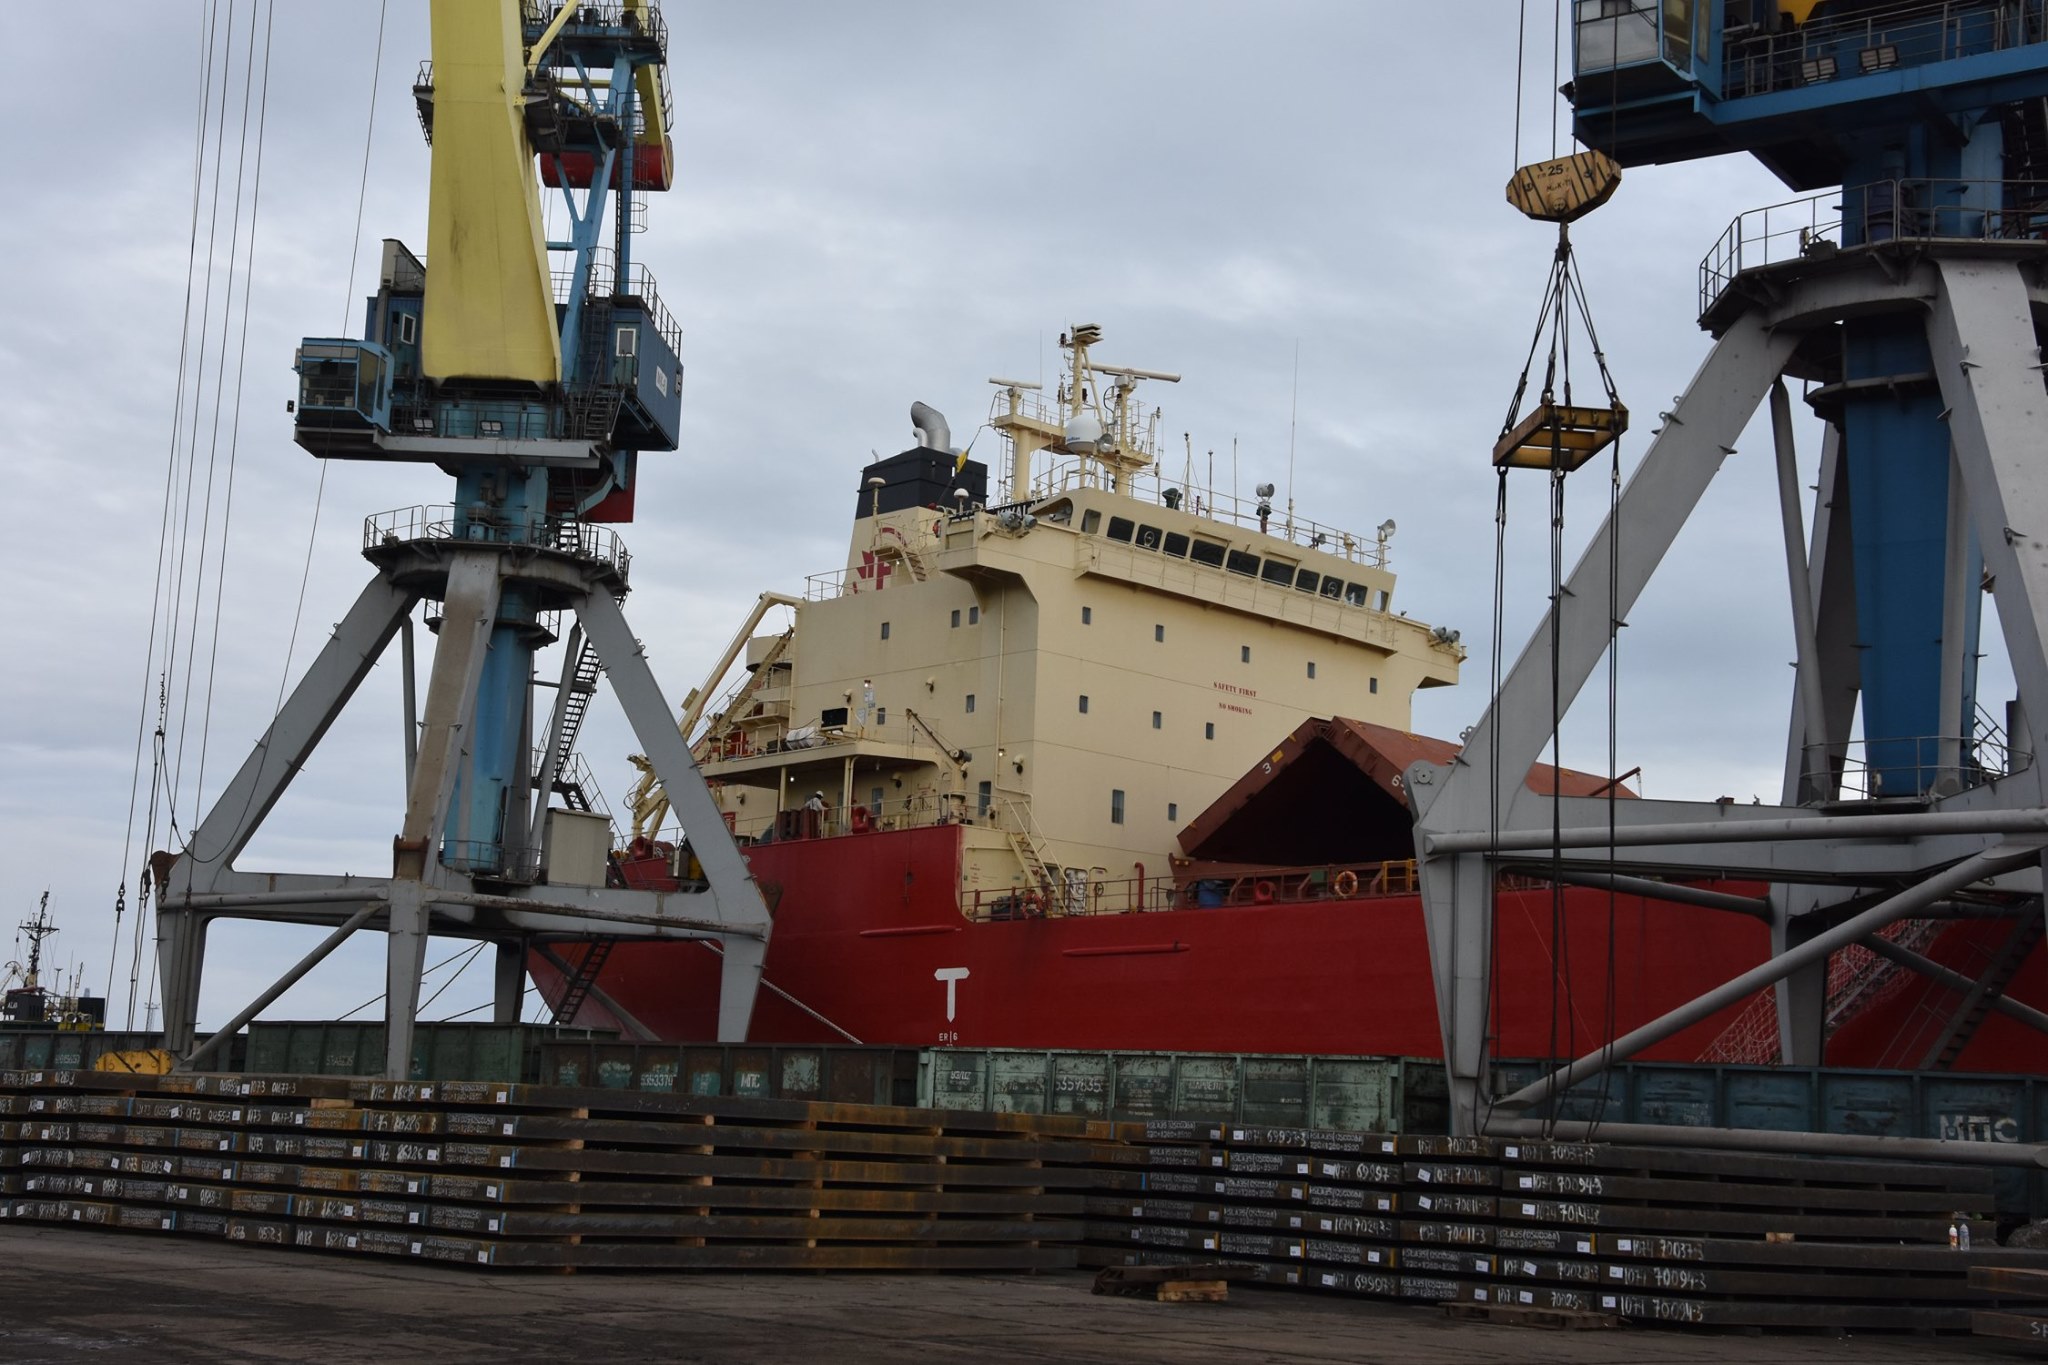 Из Мариупольского порта отправят судно в Канаду. Впервые за 10 лет: фото